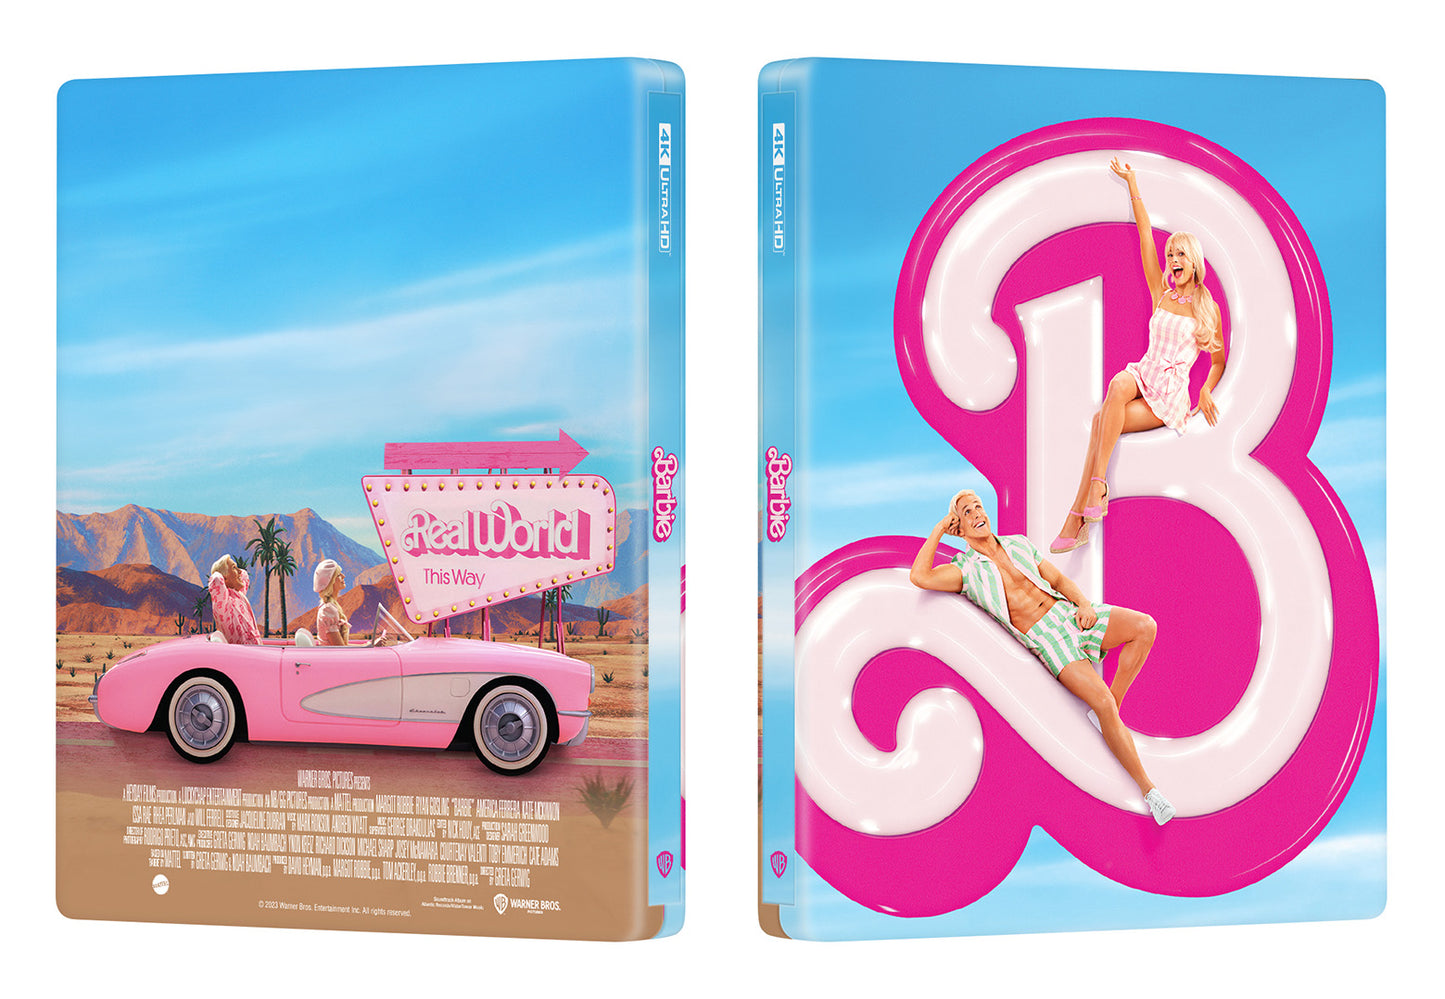 Barbie 4K Blu-ray Steelbook Manta Lab Exclusive ME#63 One Click - Pre-Order